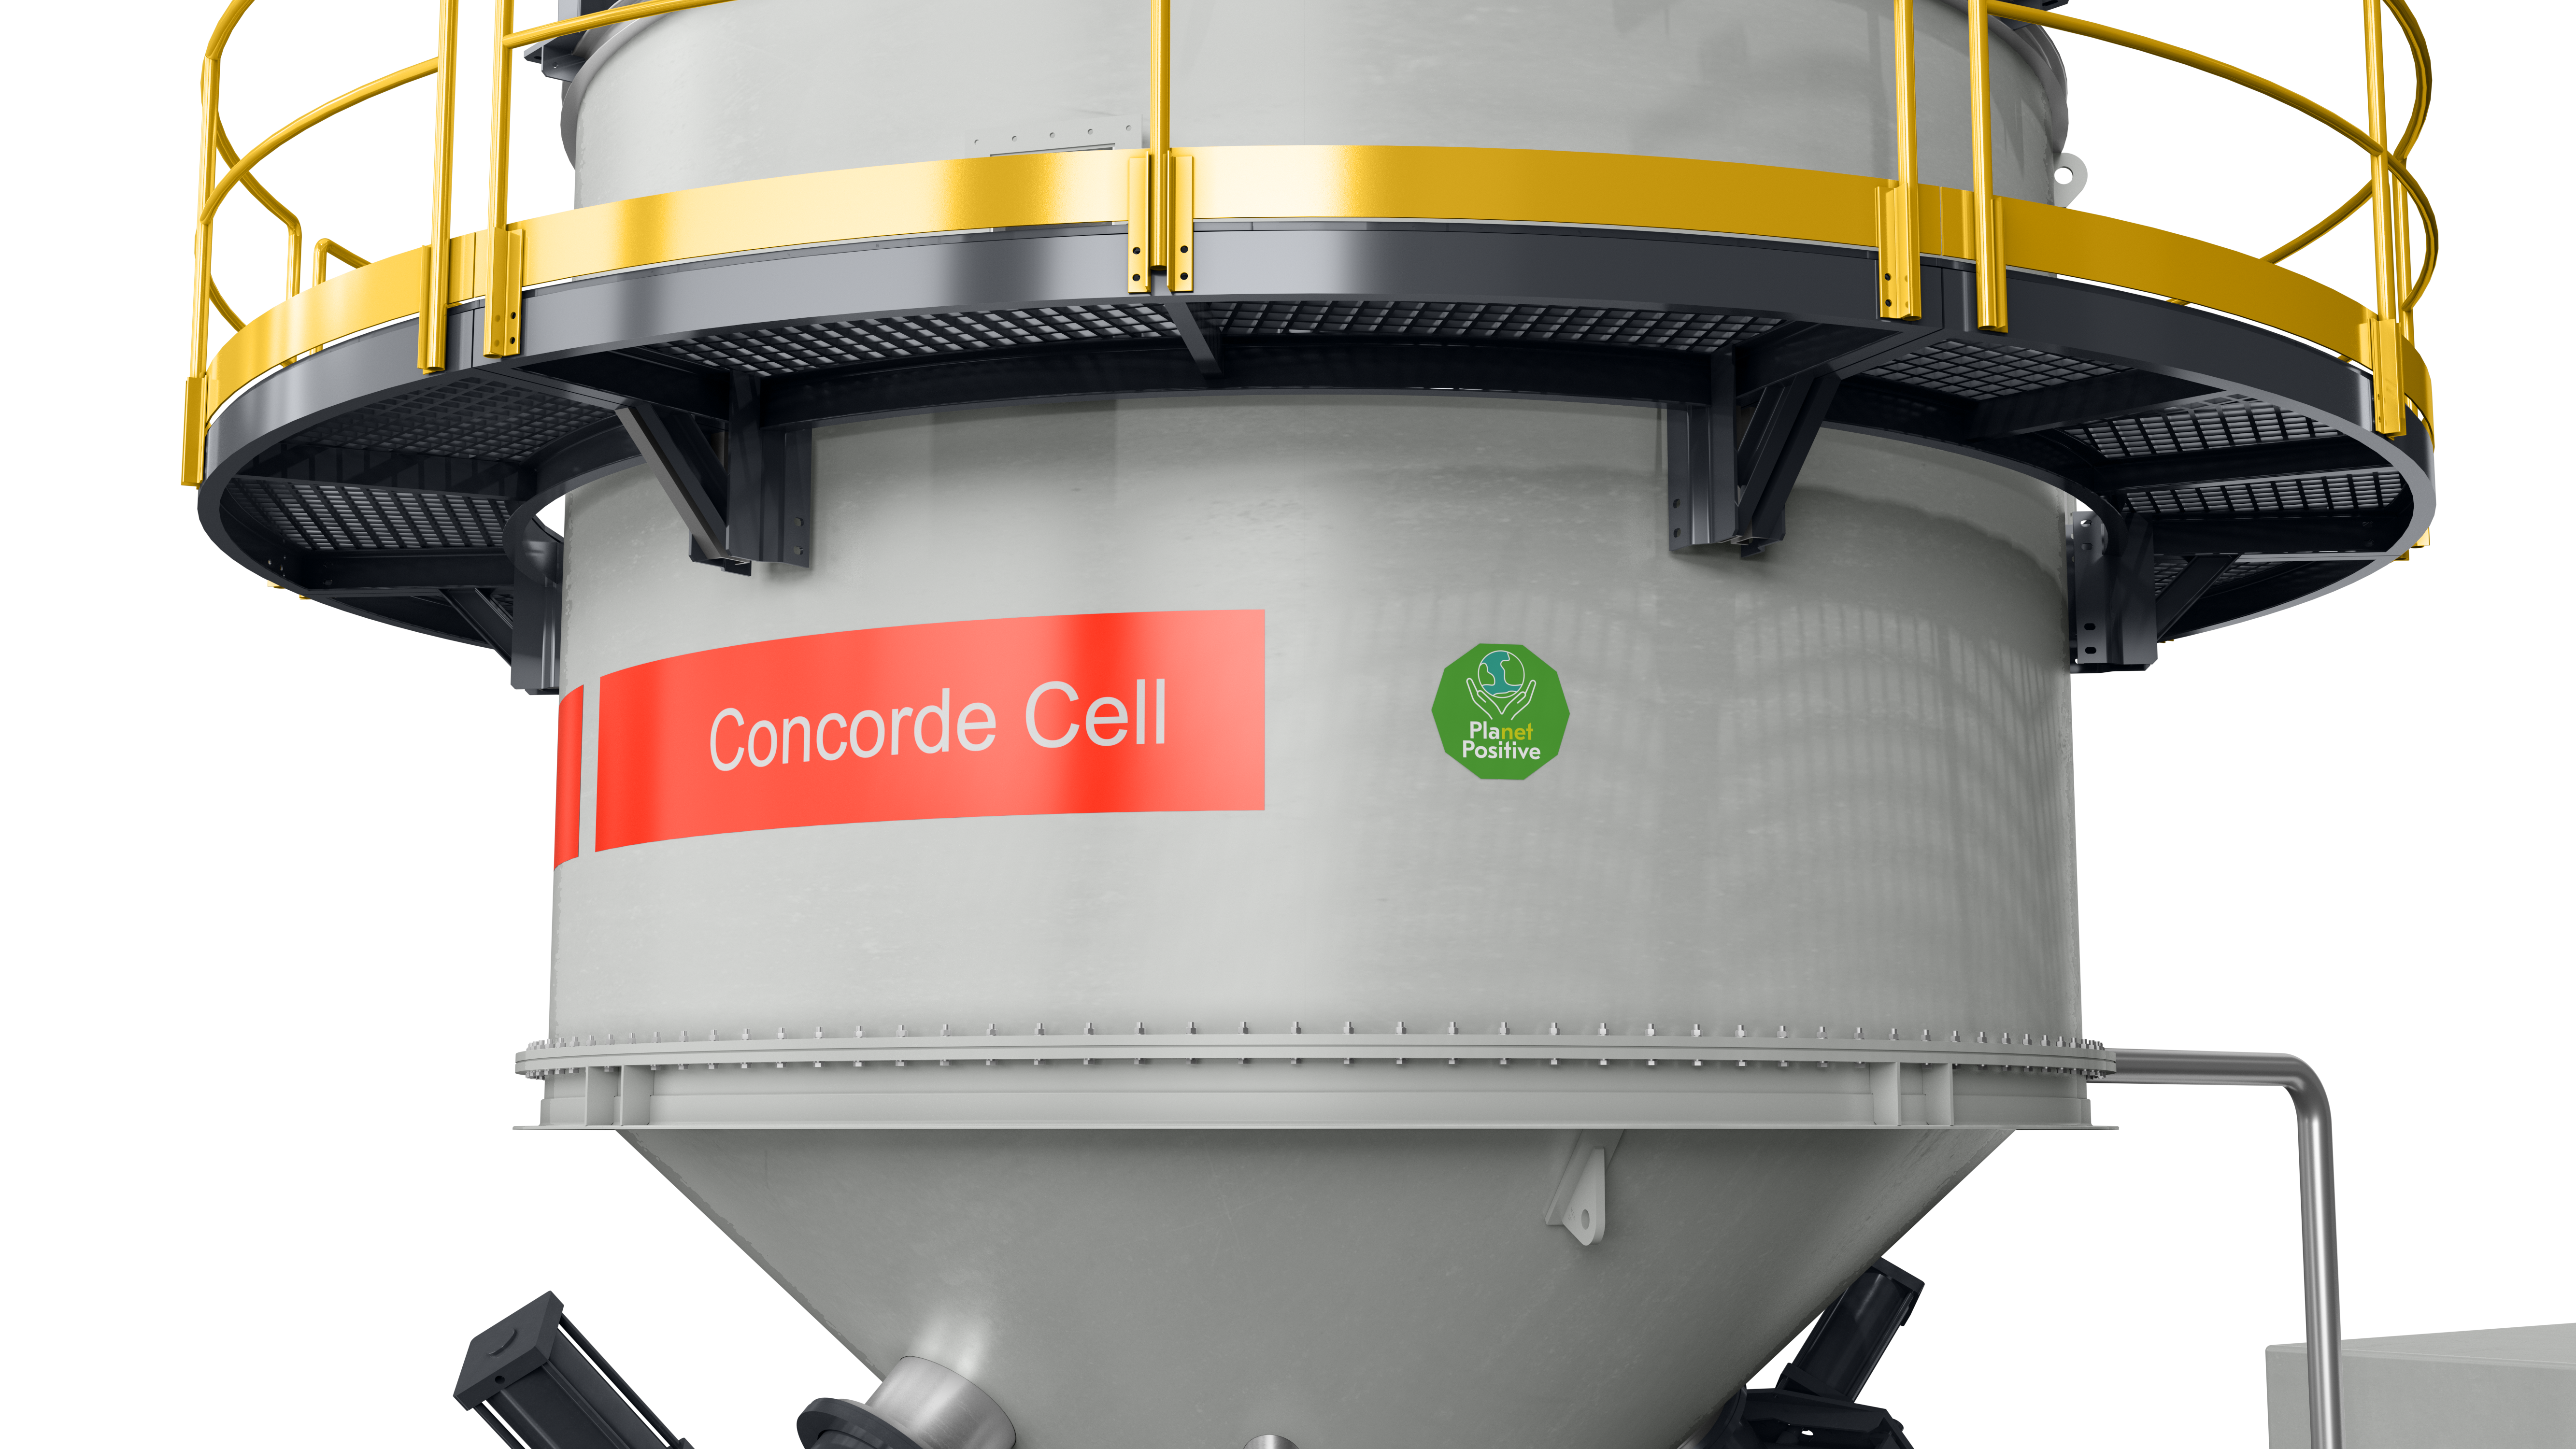 Concorde Cell Planeta Positivo